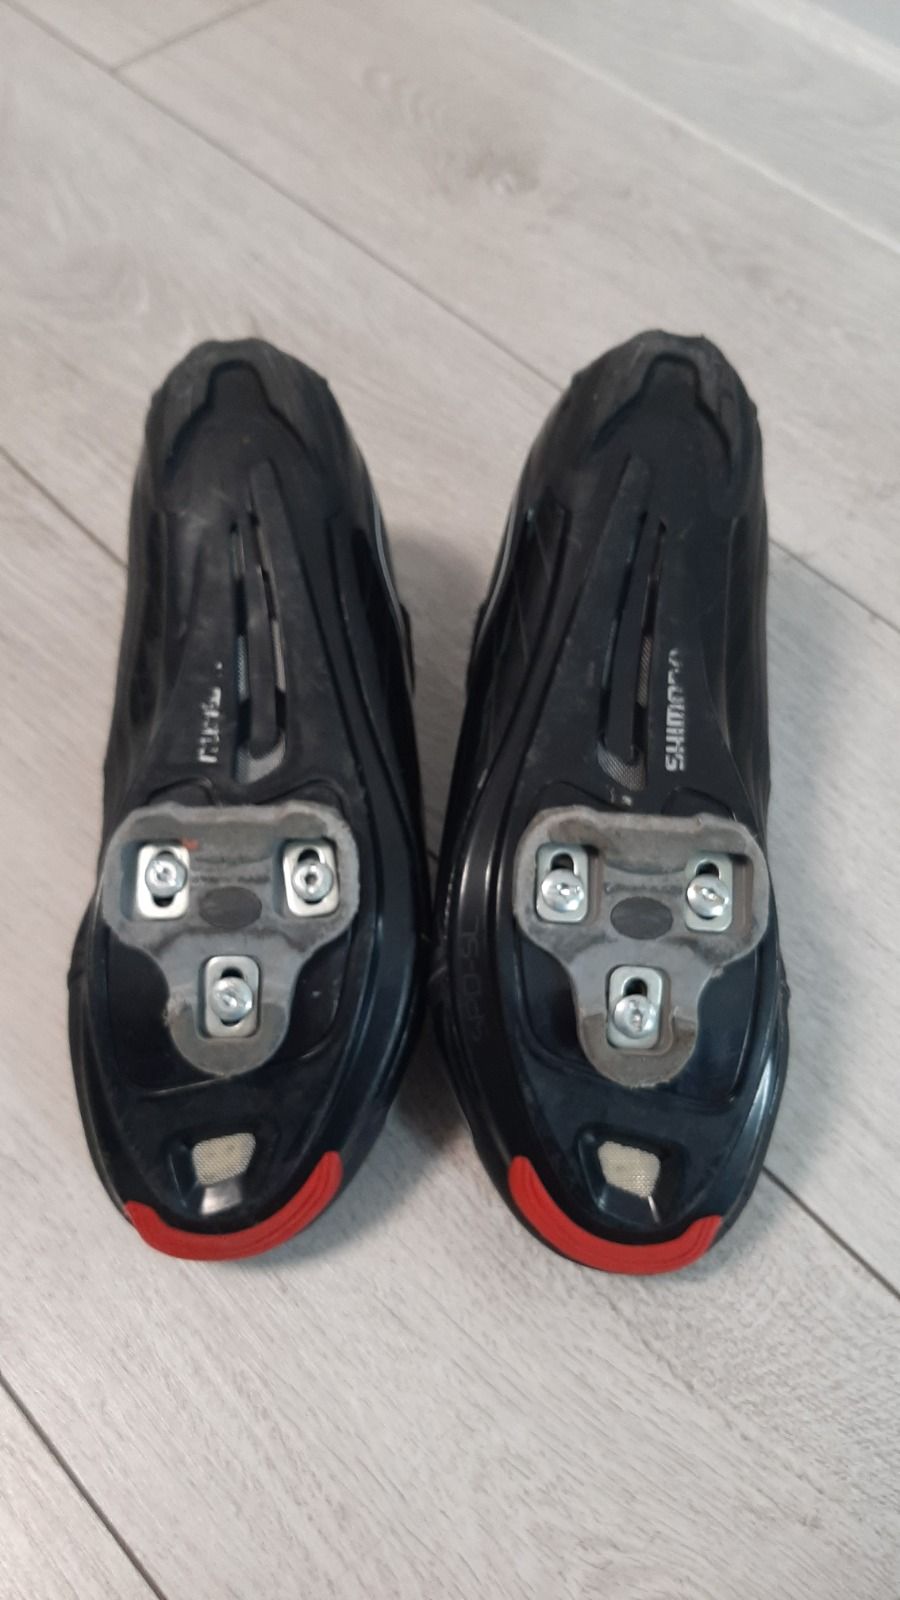 Контактные туфли SHIMANO SH-R065L BLACK. Цена 45$